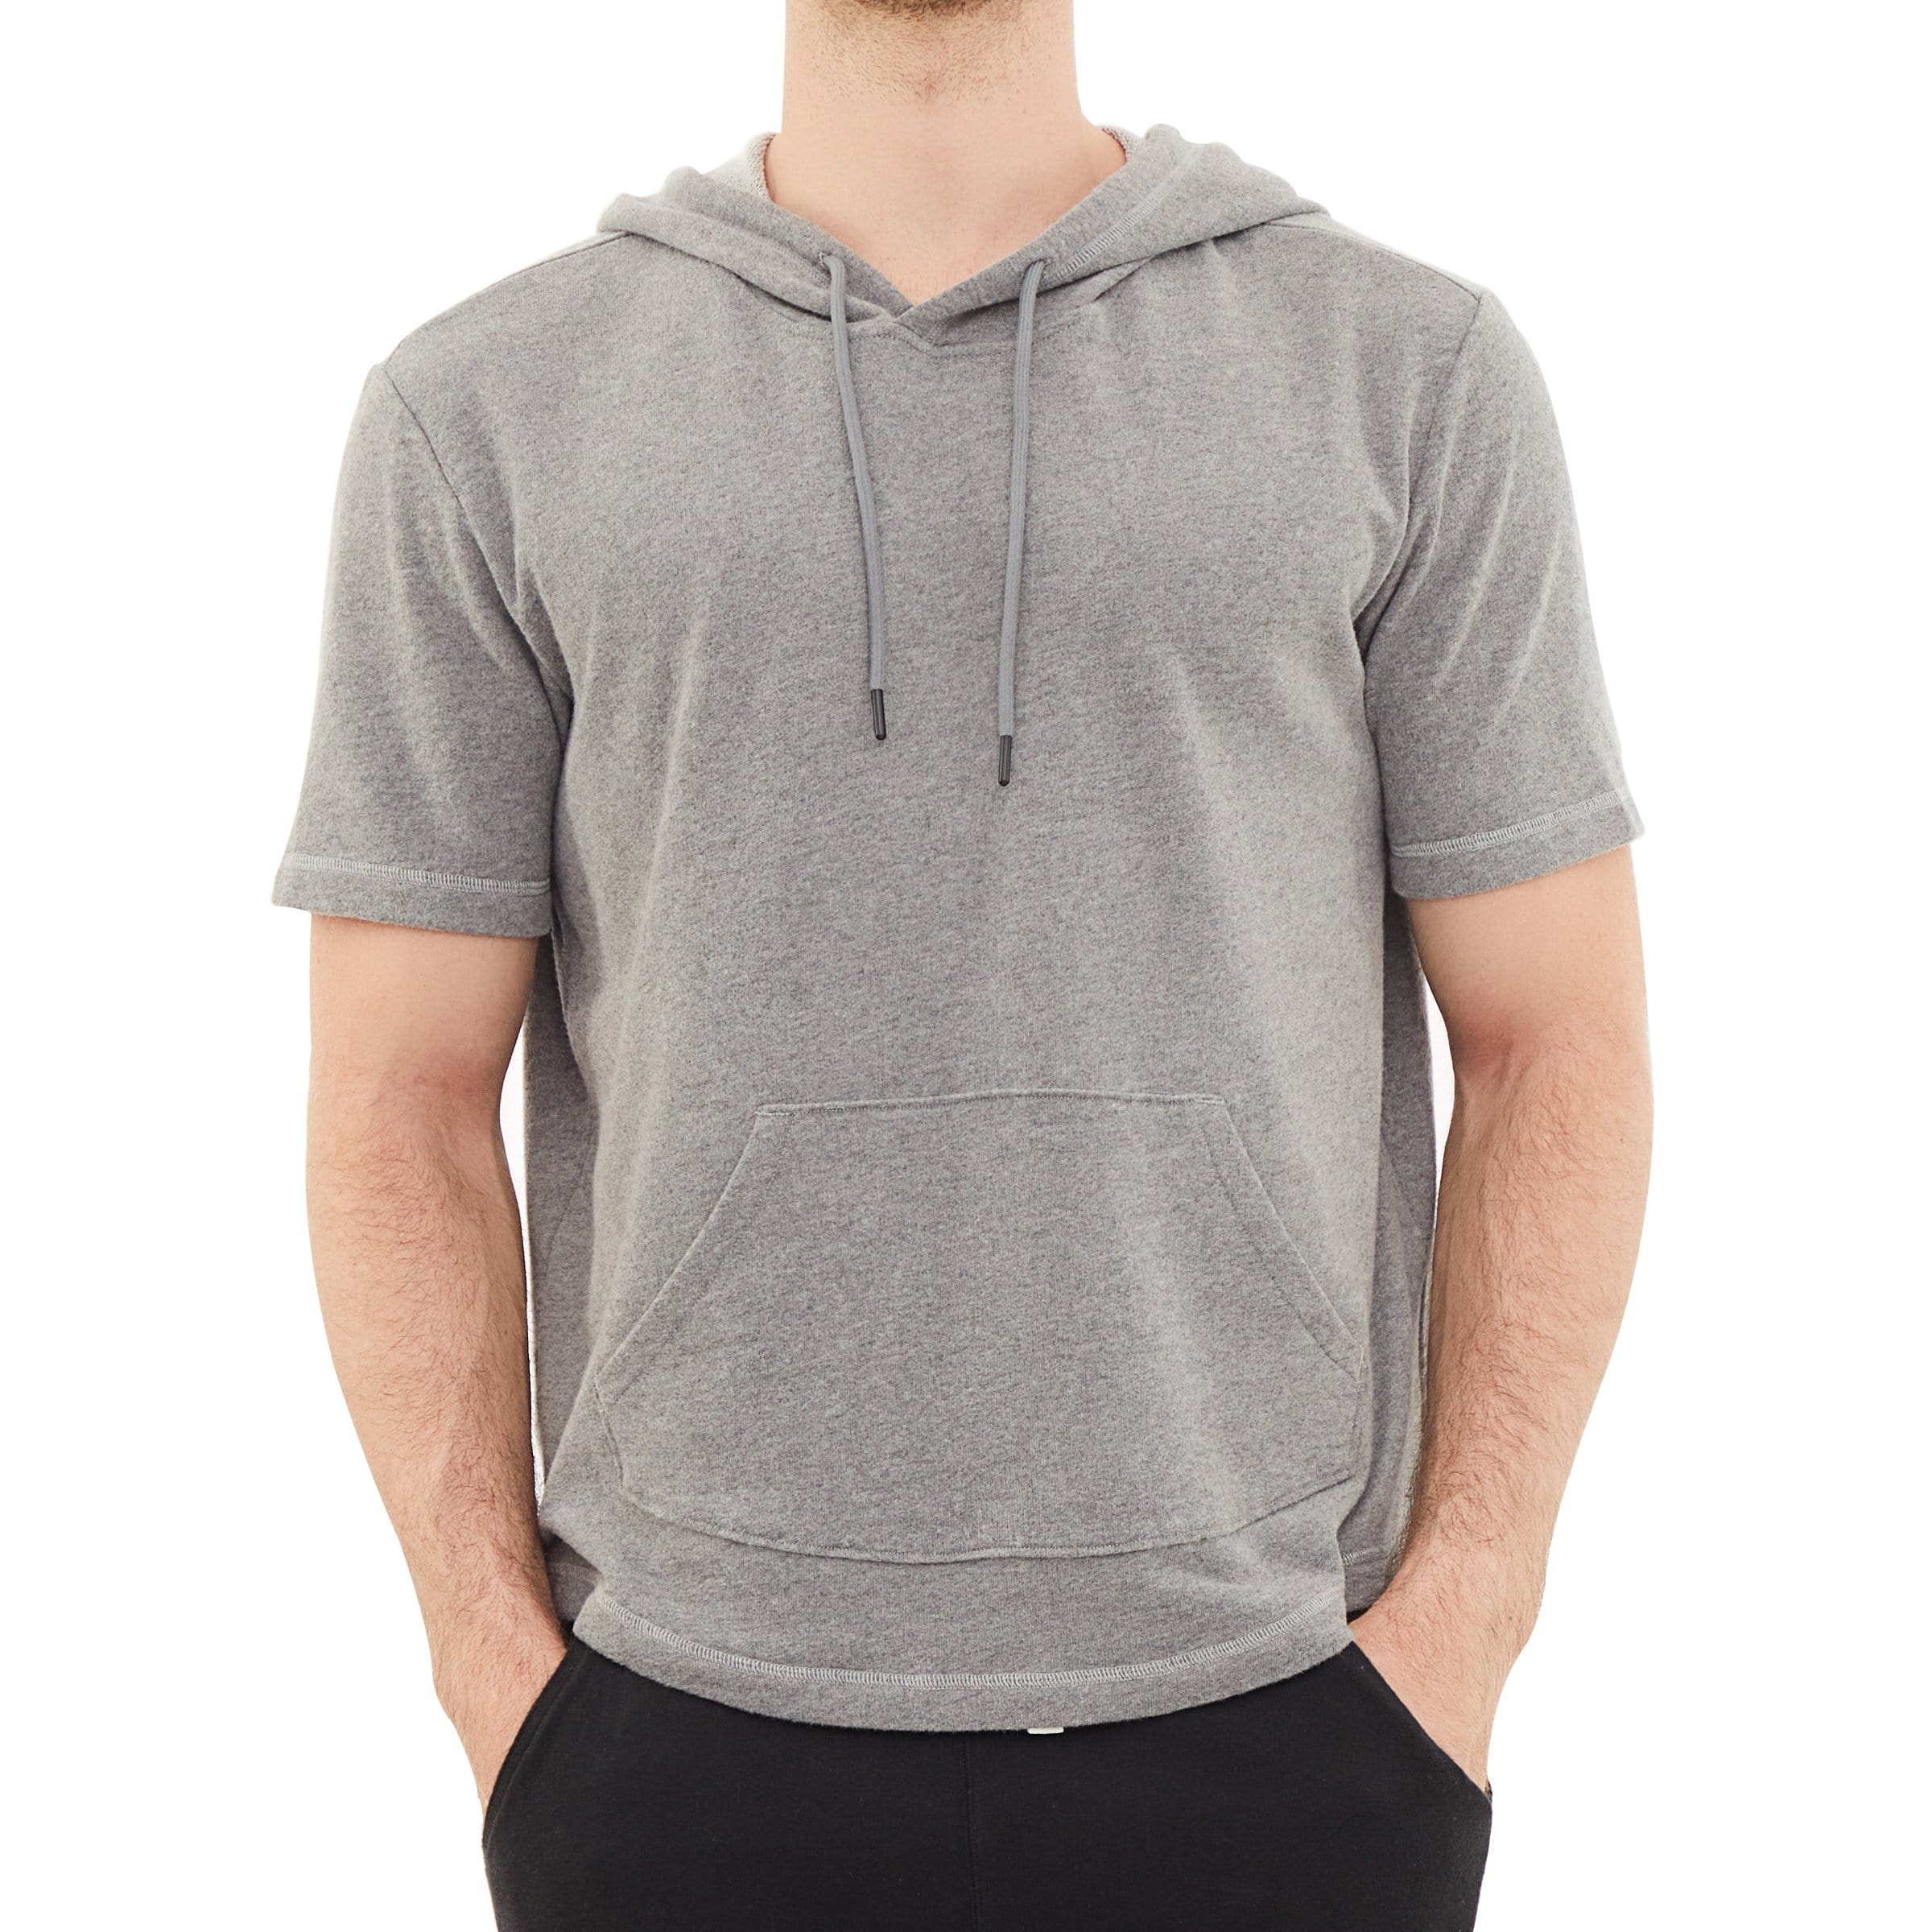 Men's Hoodies short-sleeved hooded sweatshirt #0605